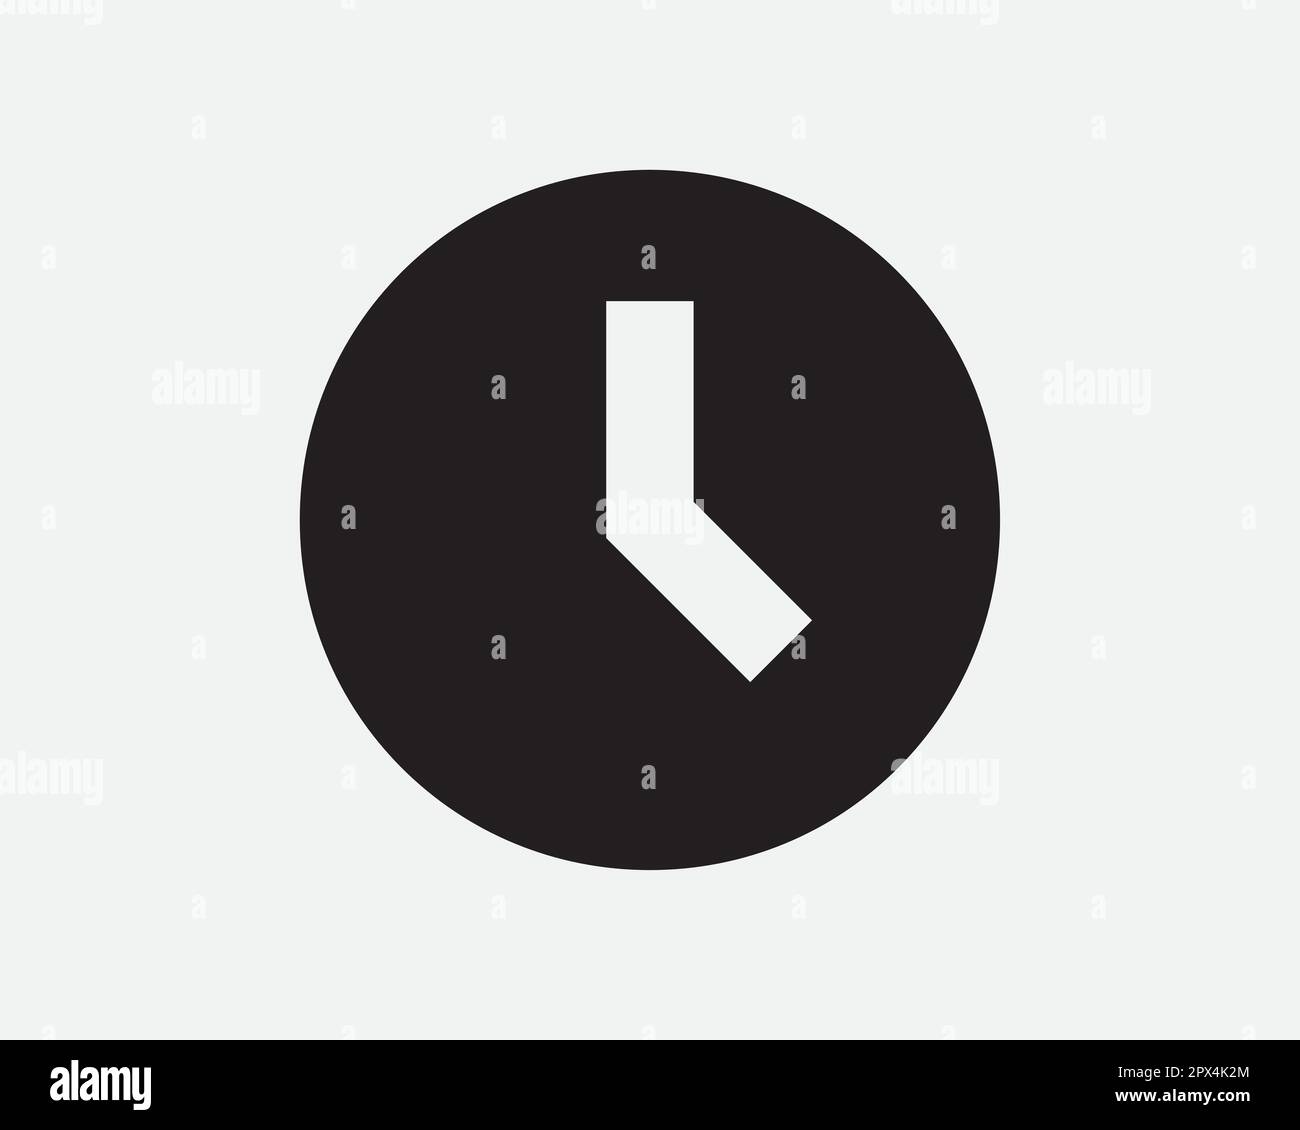 Icône horloge ronde. Symbole d'alarme de délai de temporisation de la montre murale analogique. Illustration graphique vectorielle noir et blanc Clipart Crucut Cut Illustration de Vecteur